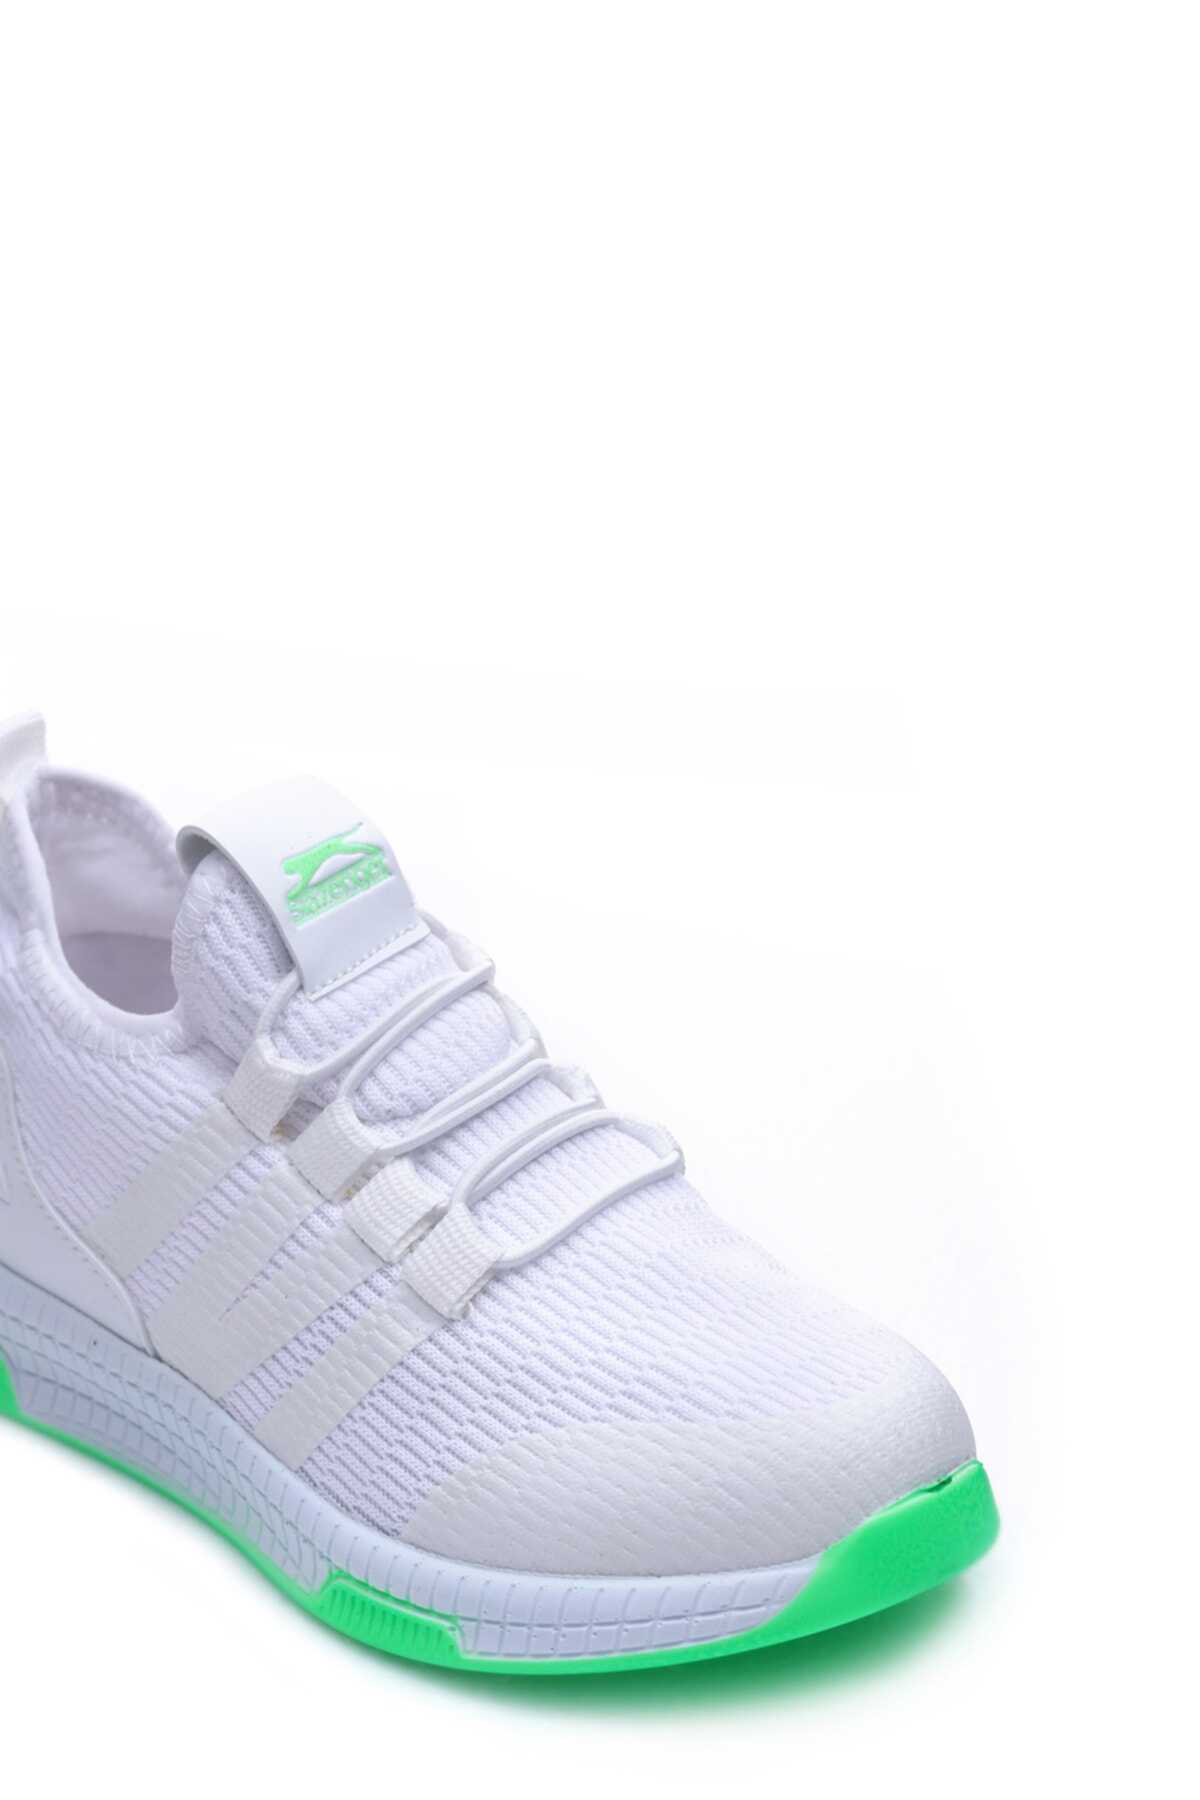 کفش کتانی بچه گانه یونیسکس سفید سبز برند Slazenger 